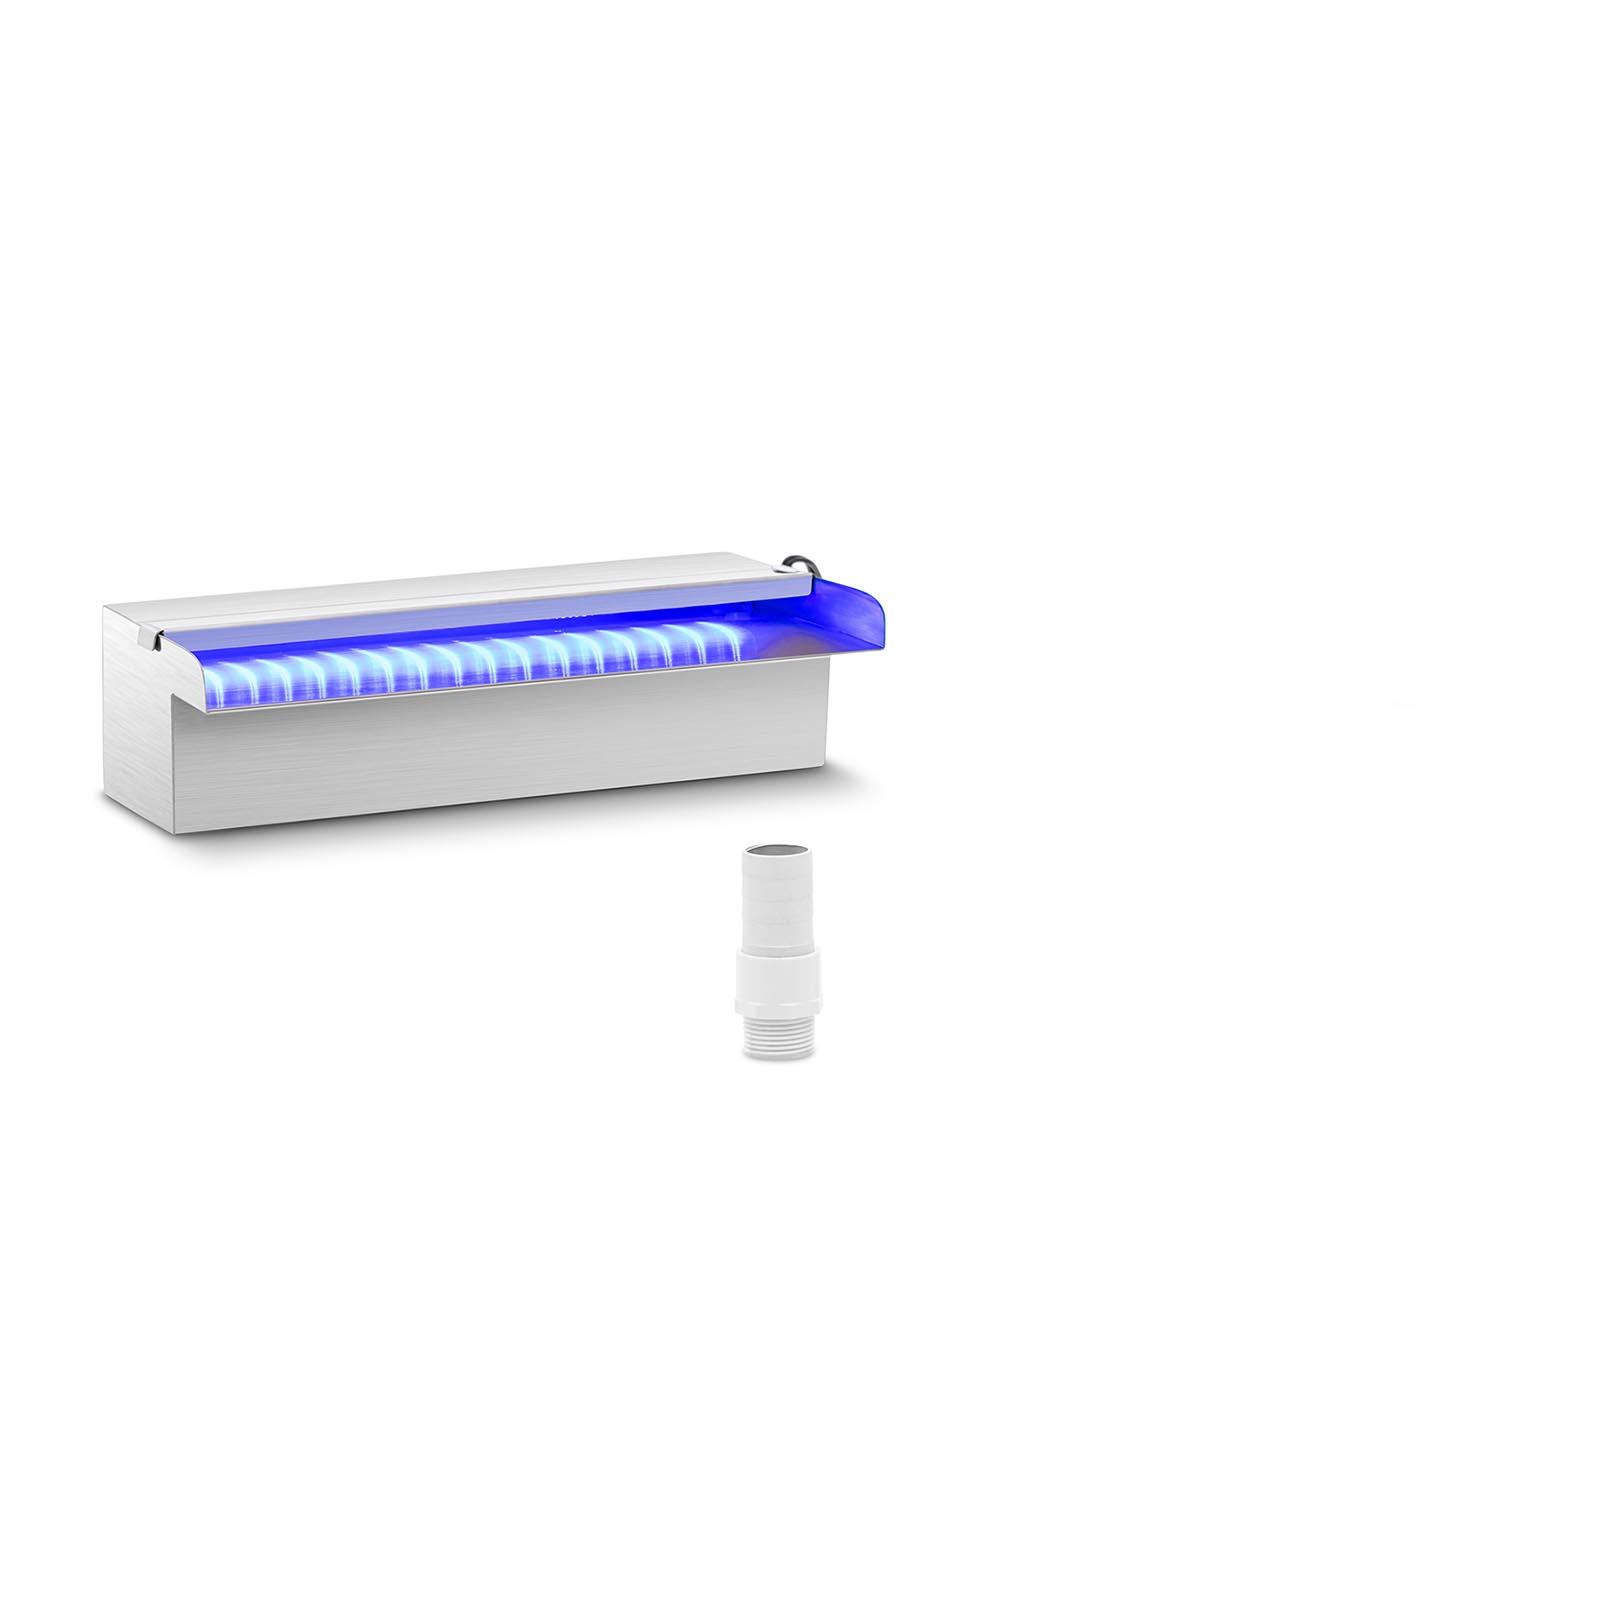 Duș de supratensiune - 30 cm - Iluminare cu LED-uri - Albastru / Albastru